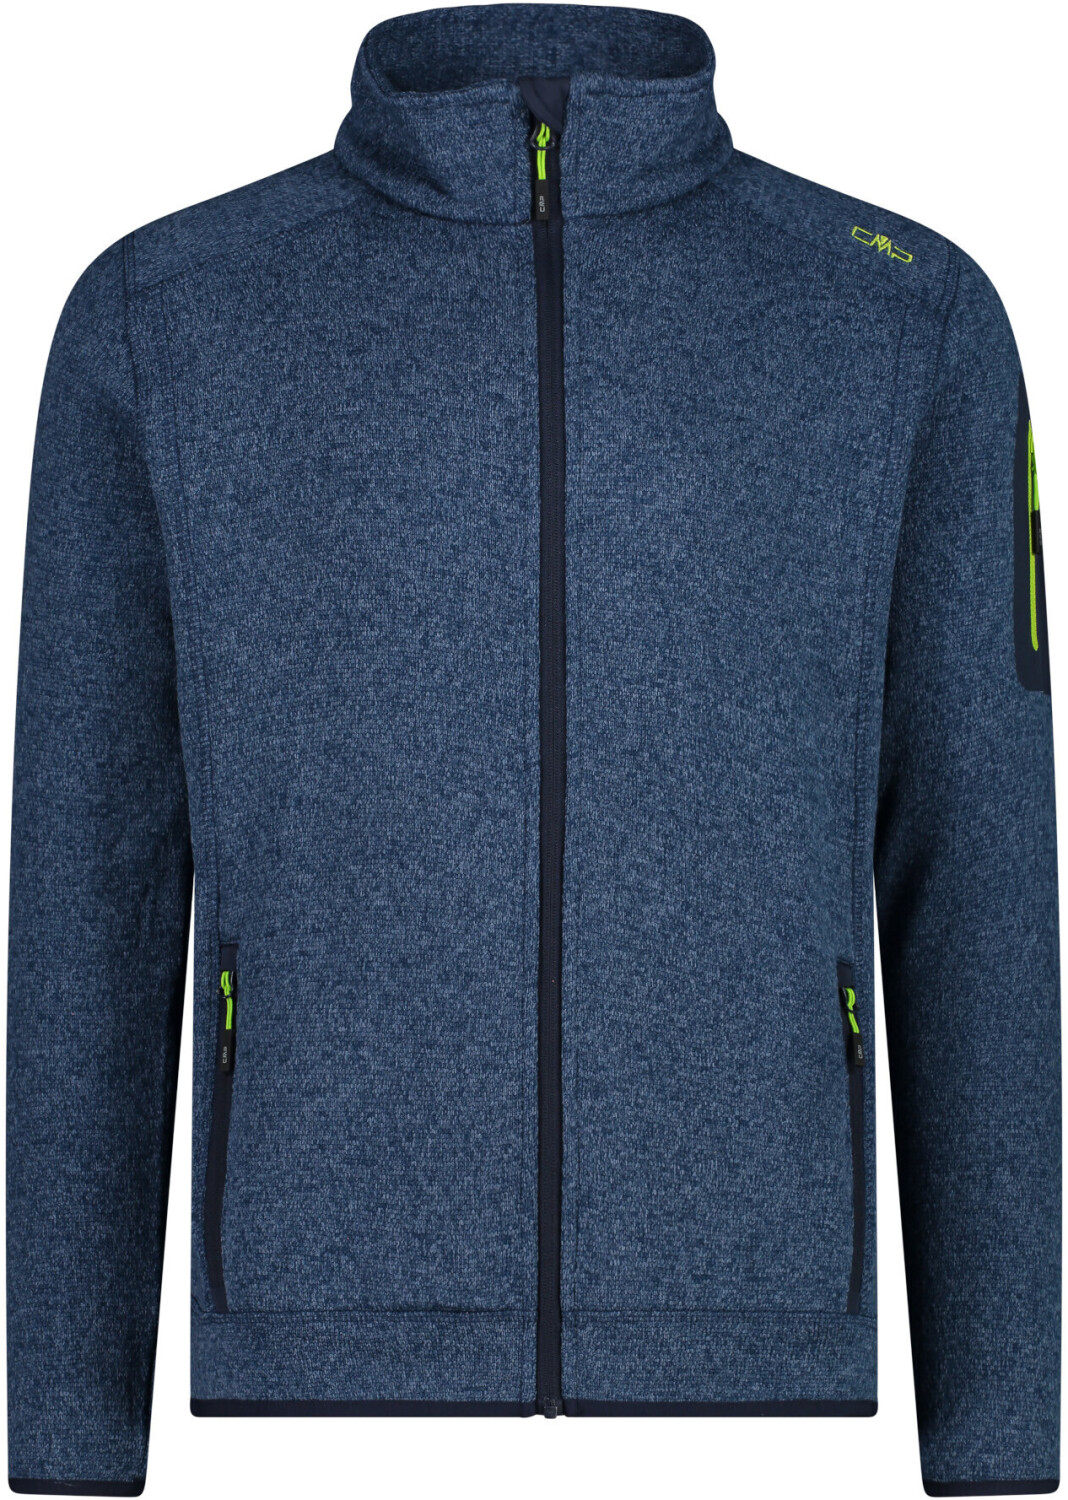 CMP Knit-Tech Jacket (3H60747) | 39,99 bei blue-limegreen € Preisvergleich ab